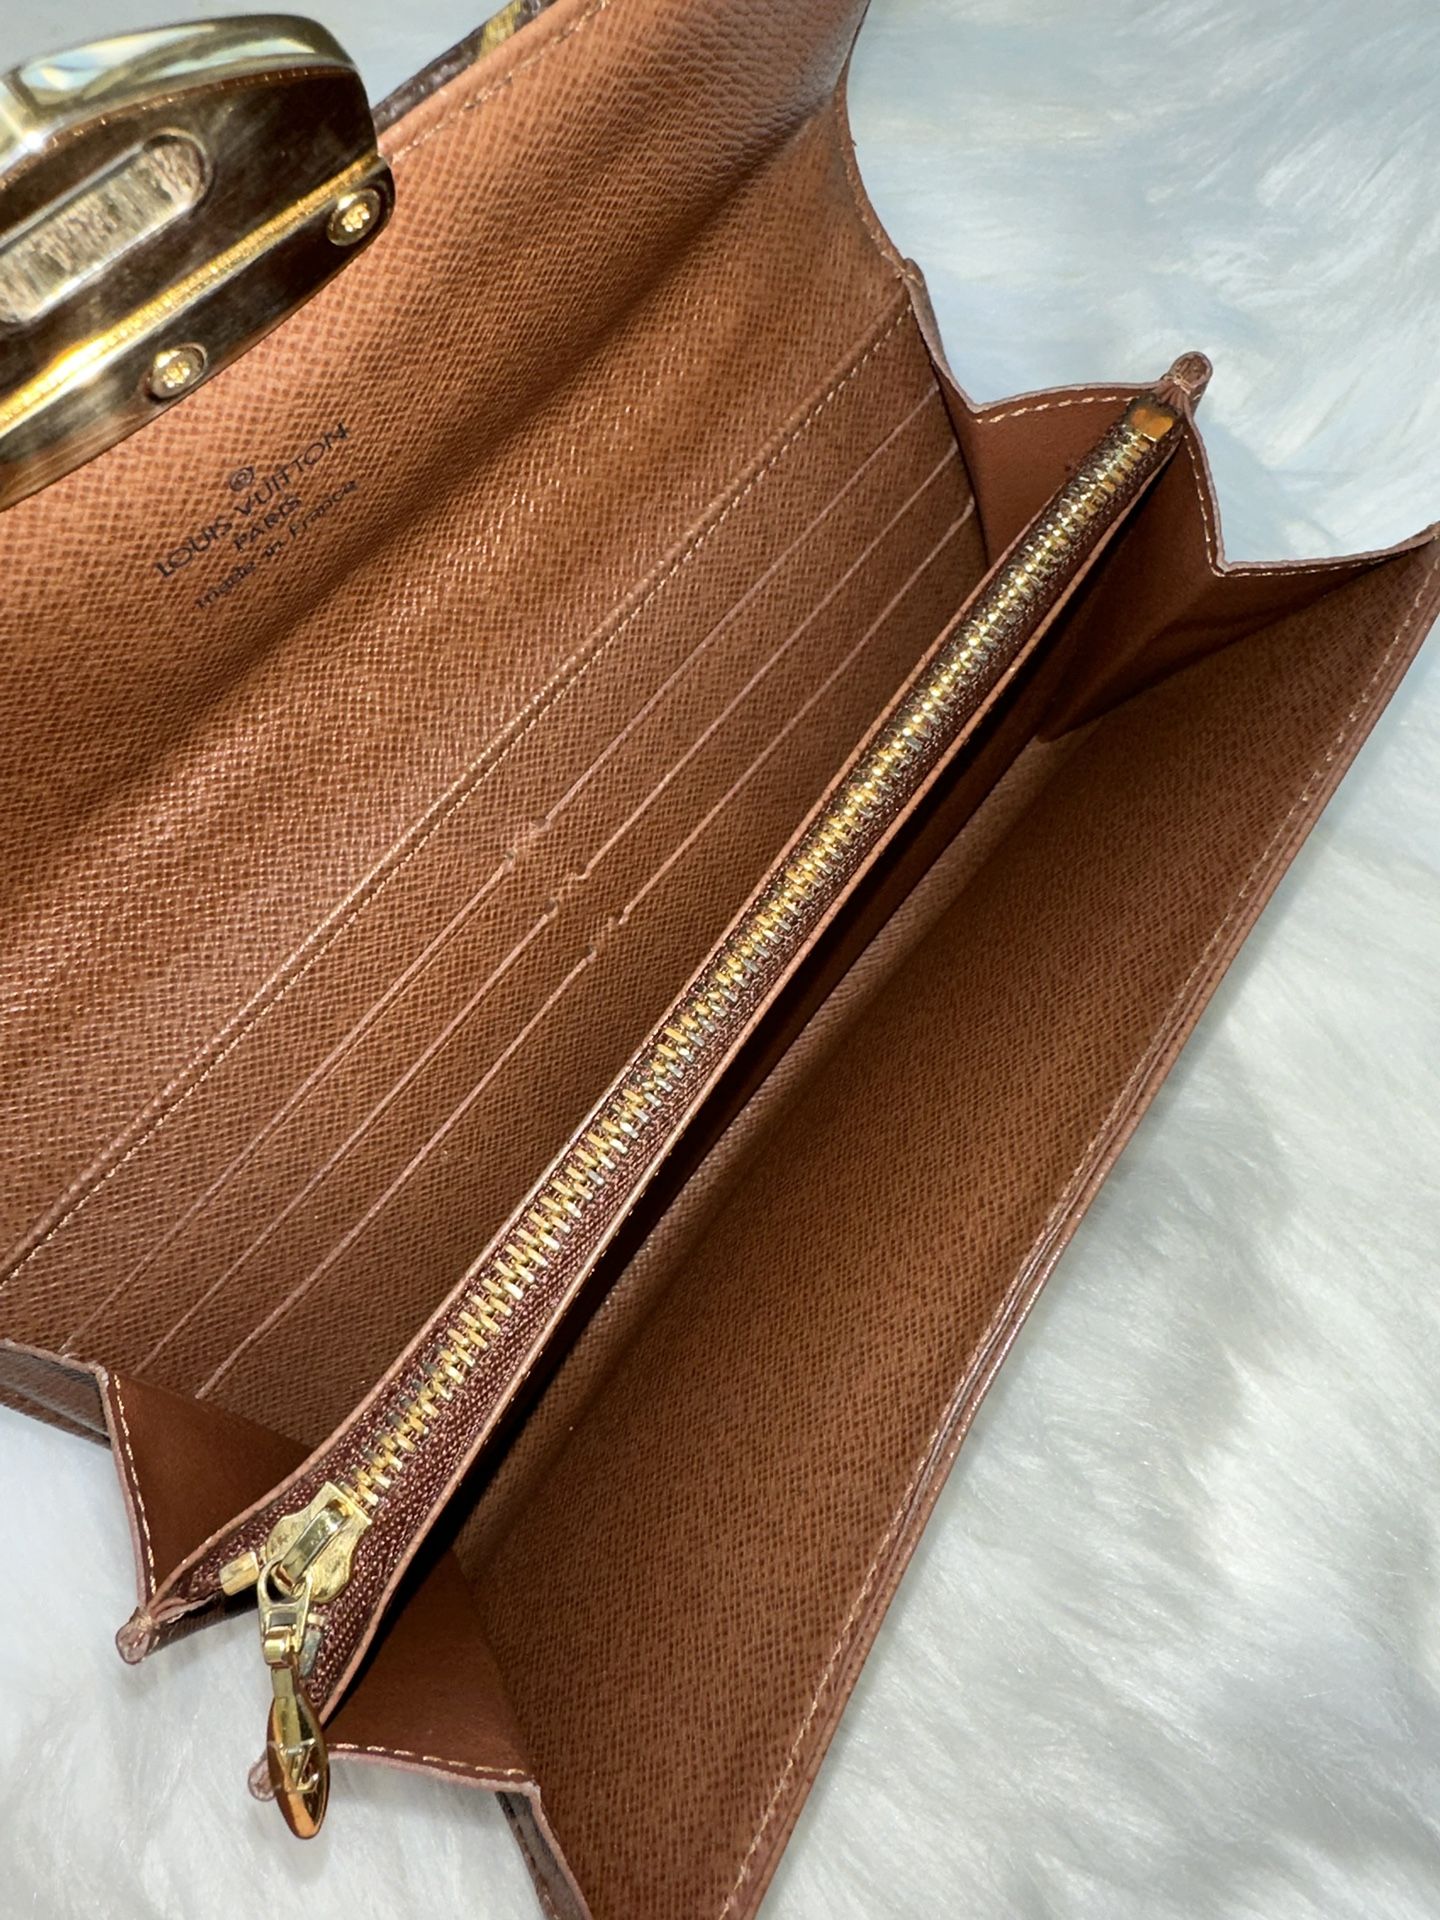 Louis Vuitton Limited Edition Sarah Monogram Etoile Wallet on SALE